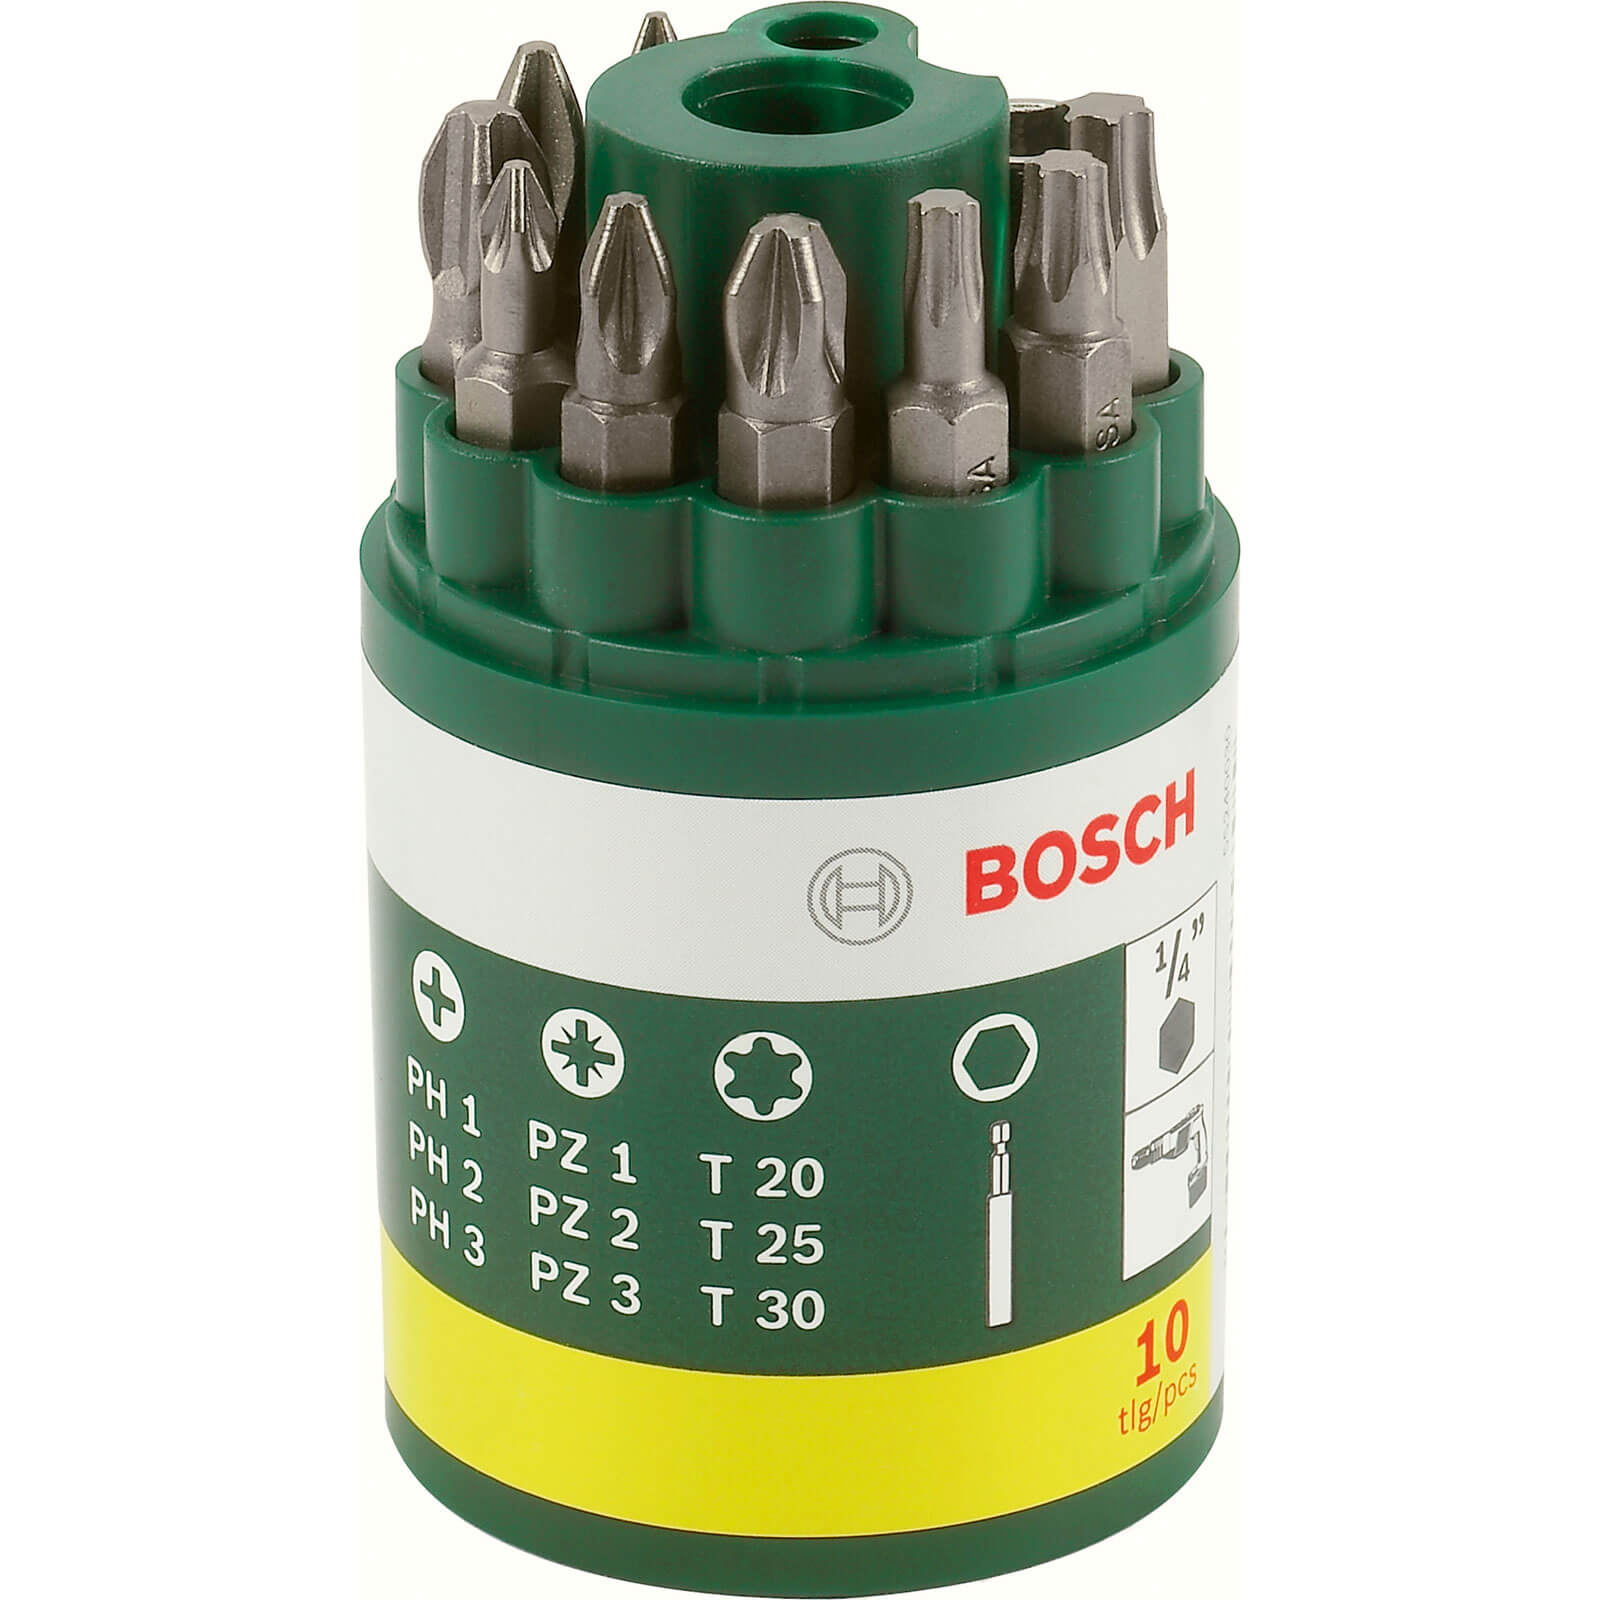 Photo of Bosch 10 Piece Mixed Screwdriver Bit Set